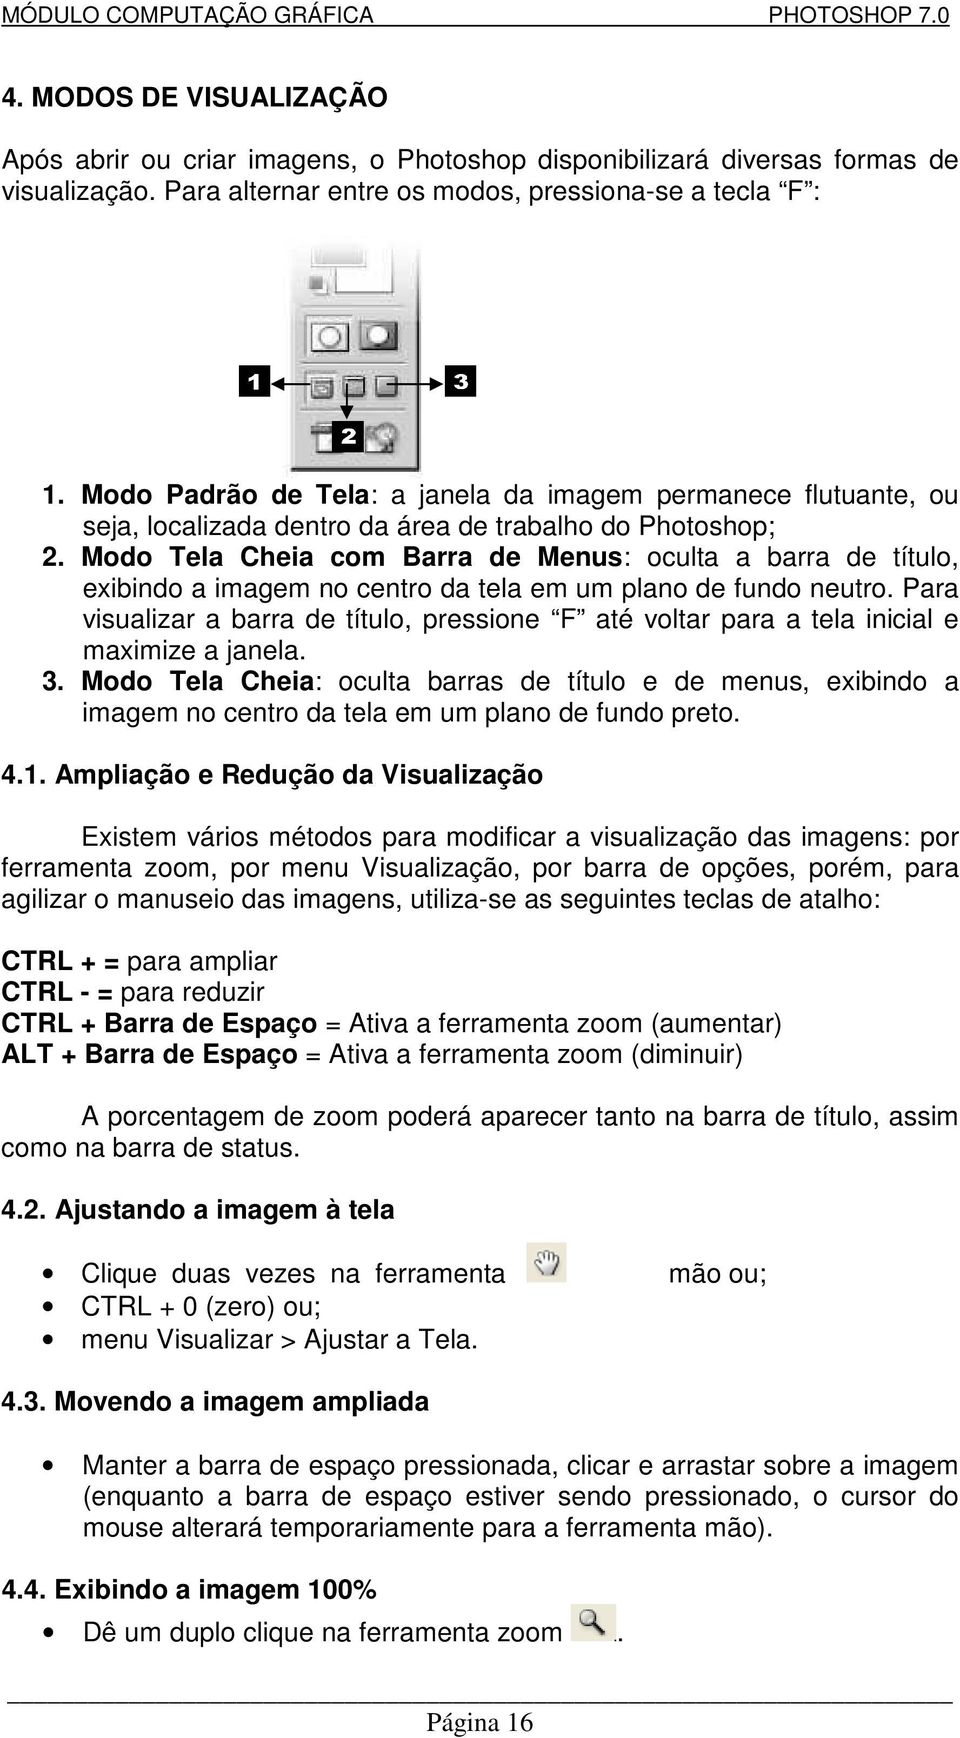 Modo Tela Cheia com Barra de Menus: oculta a barra de título, exibindo a imagem no centro da tela em um plano de fundo neutro.